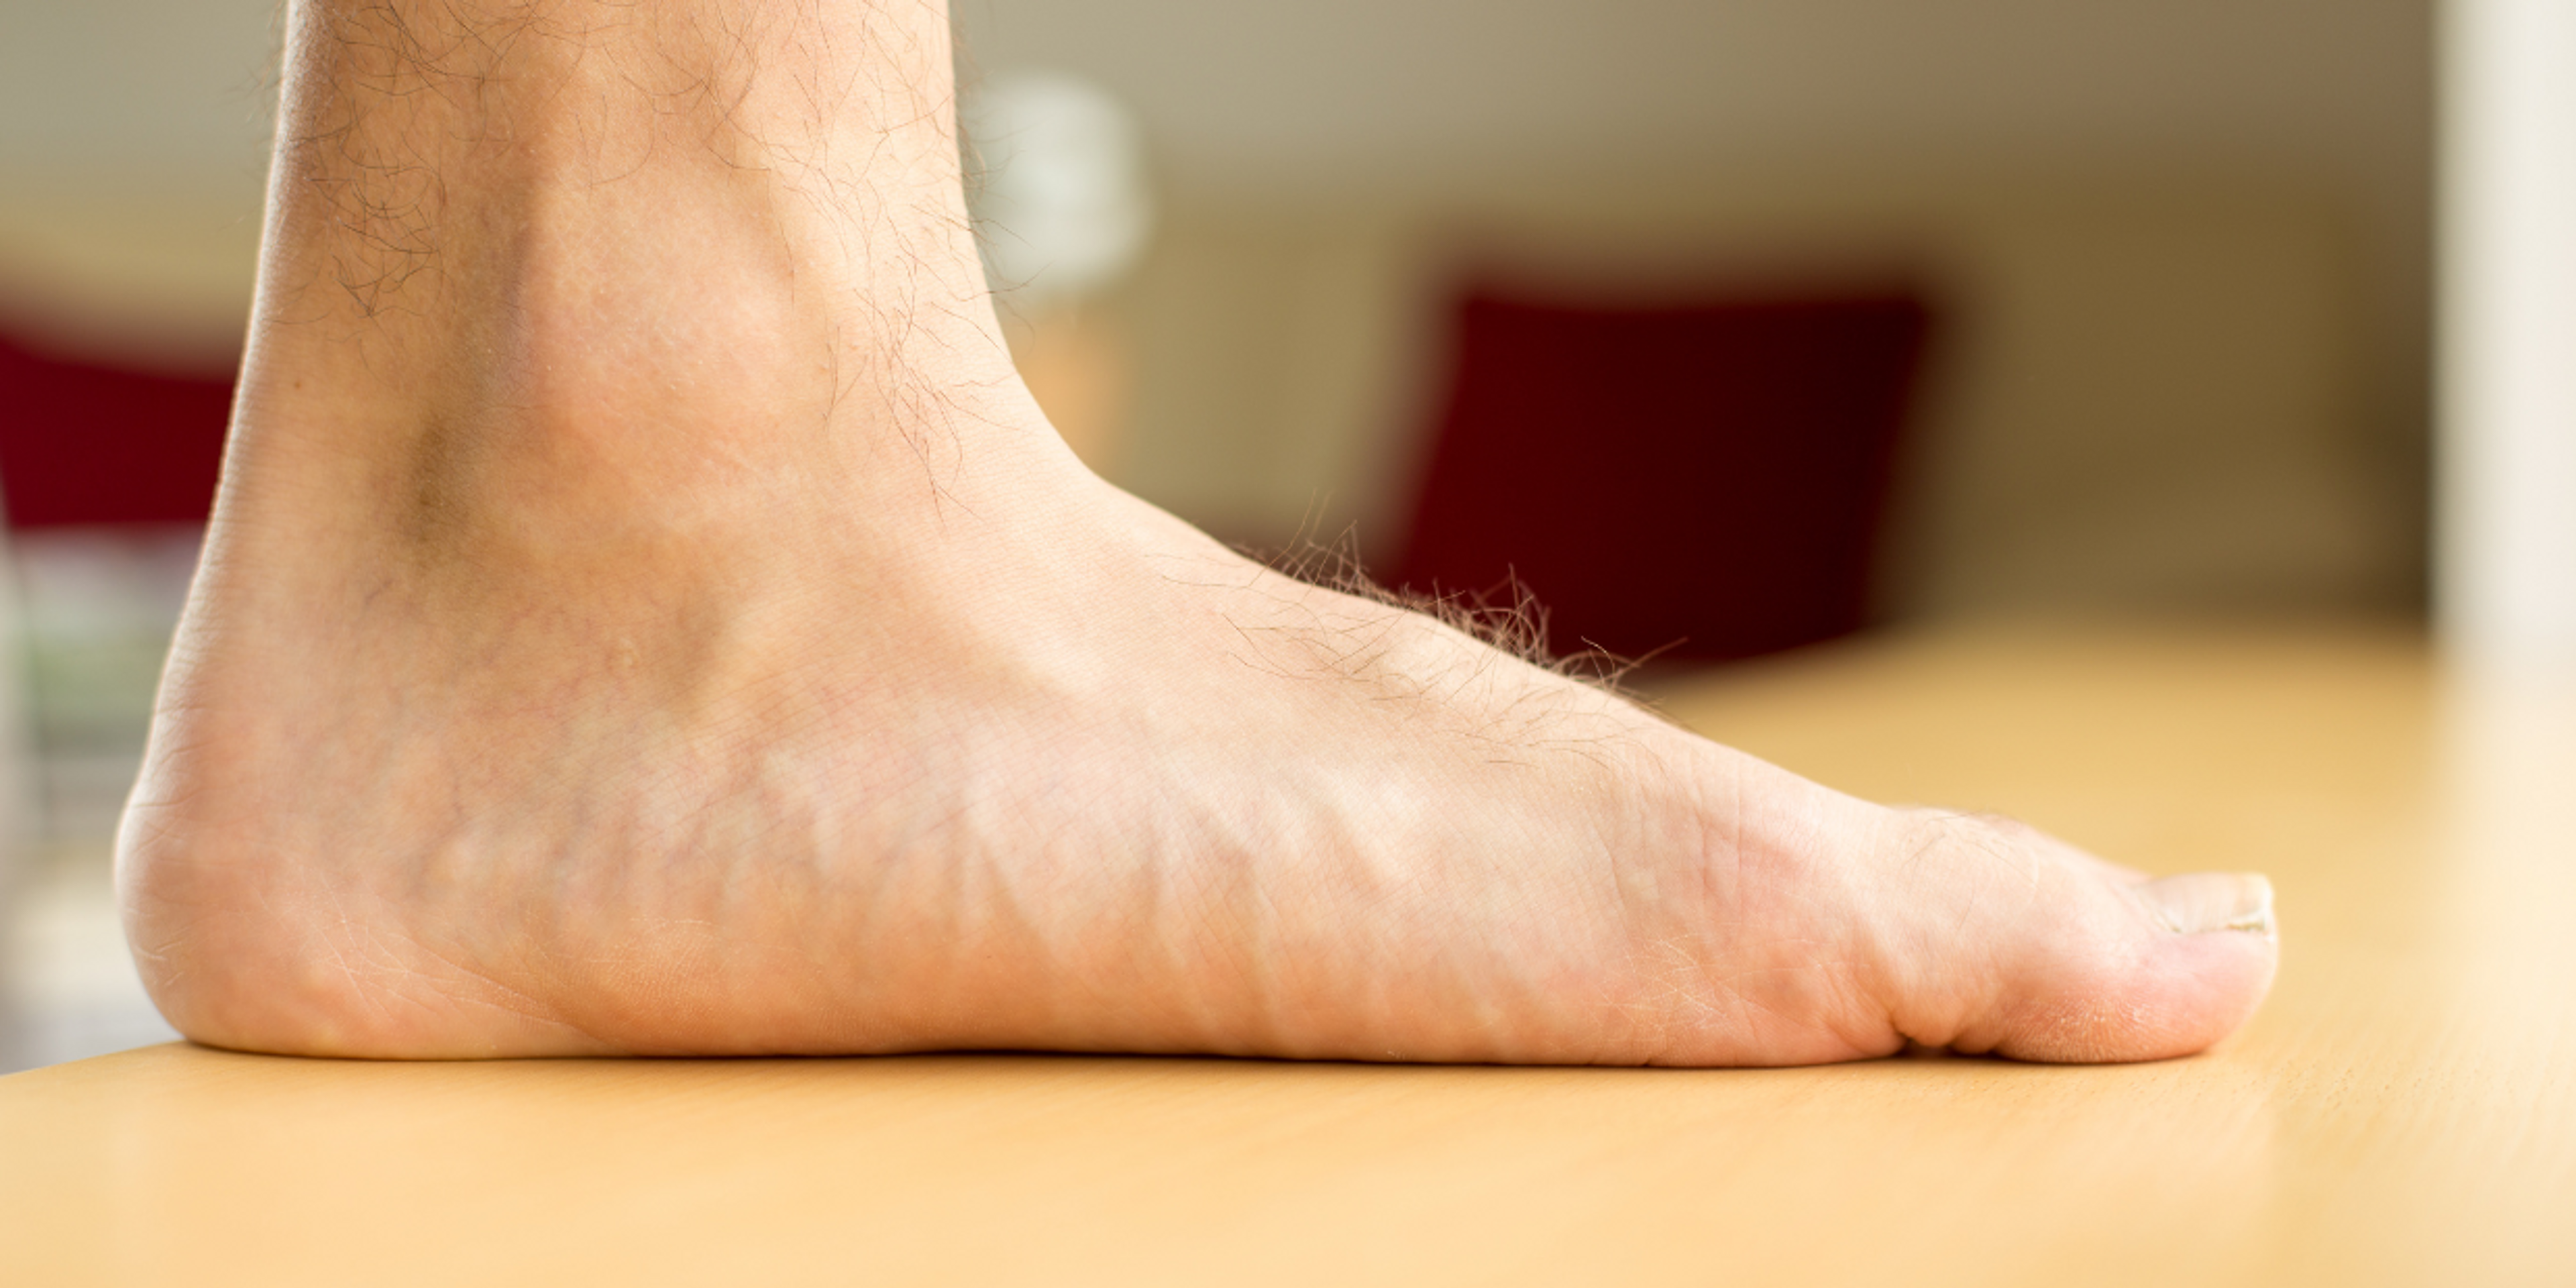 Comment les pieds plats peuvent causer des douleurs au niveau du tibia